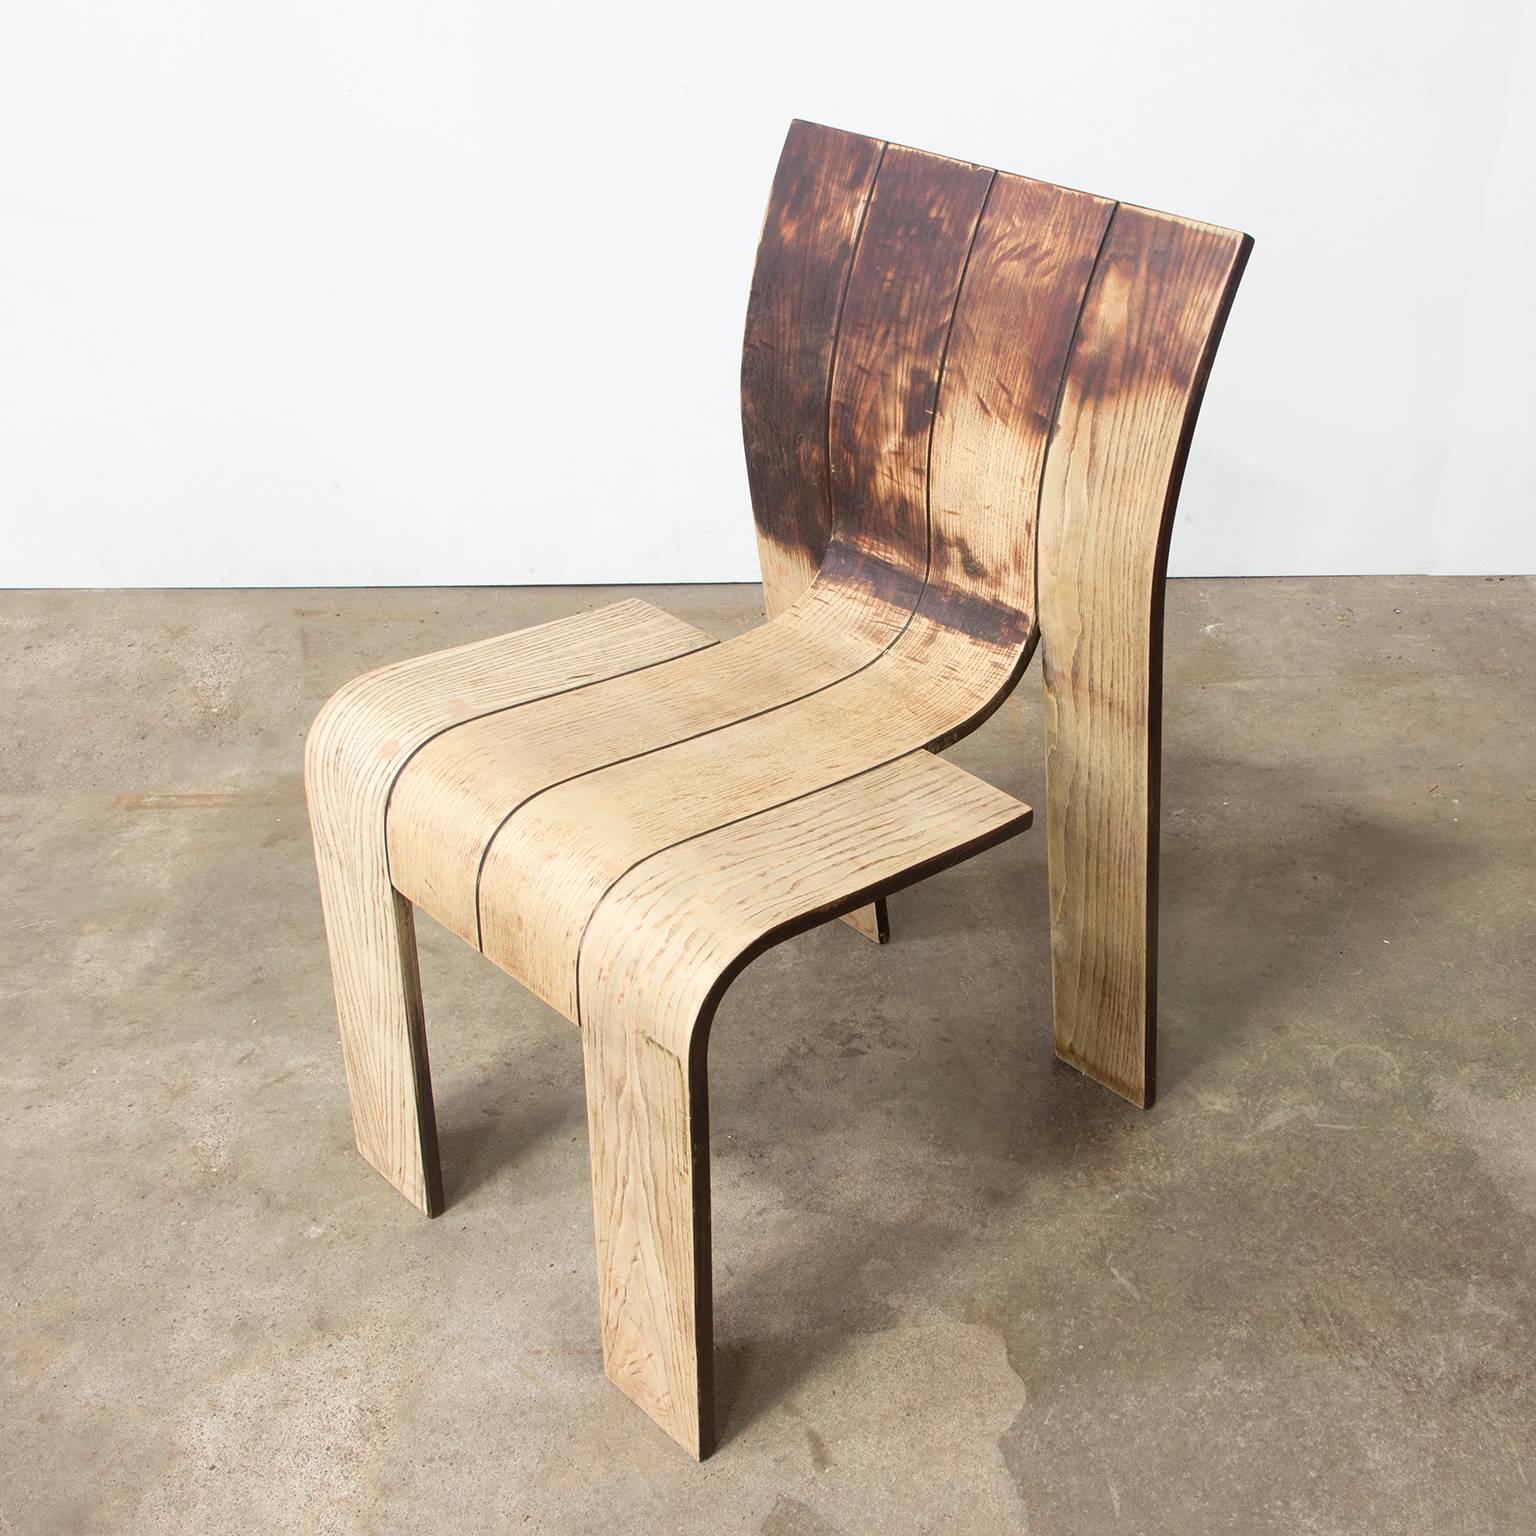 1974, Gijs Bakker, Castelijn, Partly Varnished Stackable Bended Wood Strip Chair 1